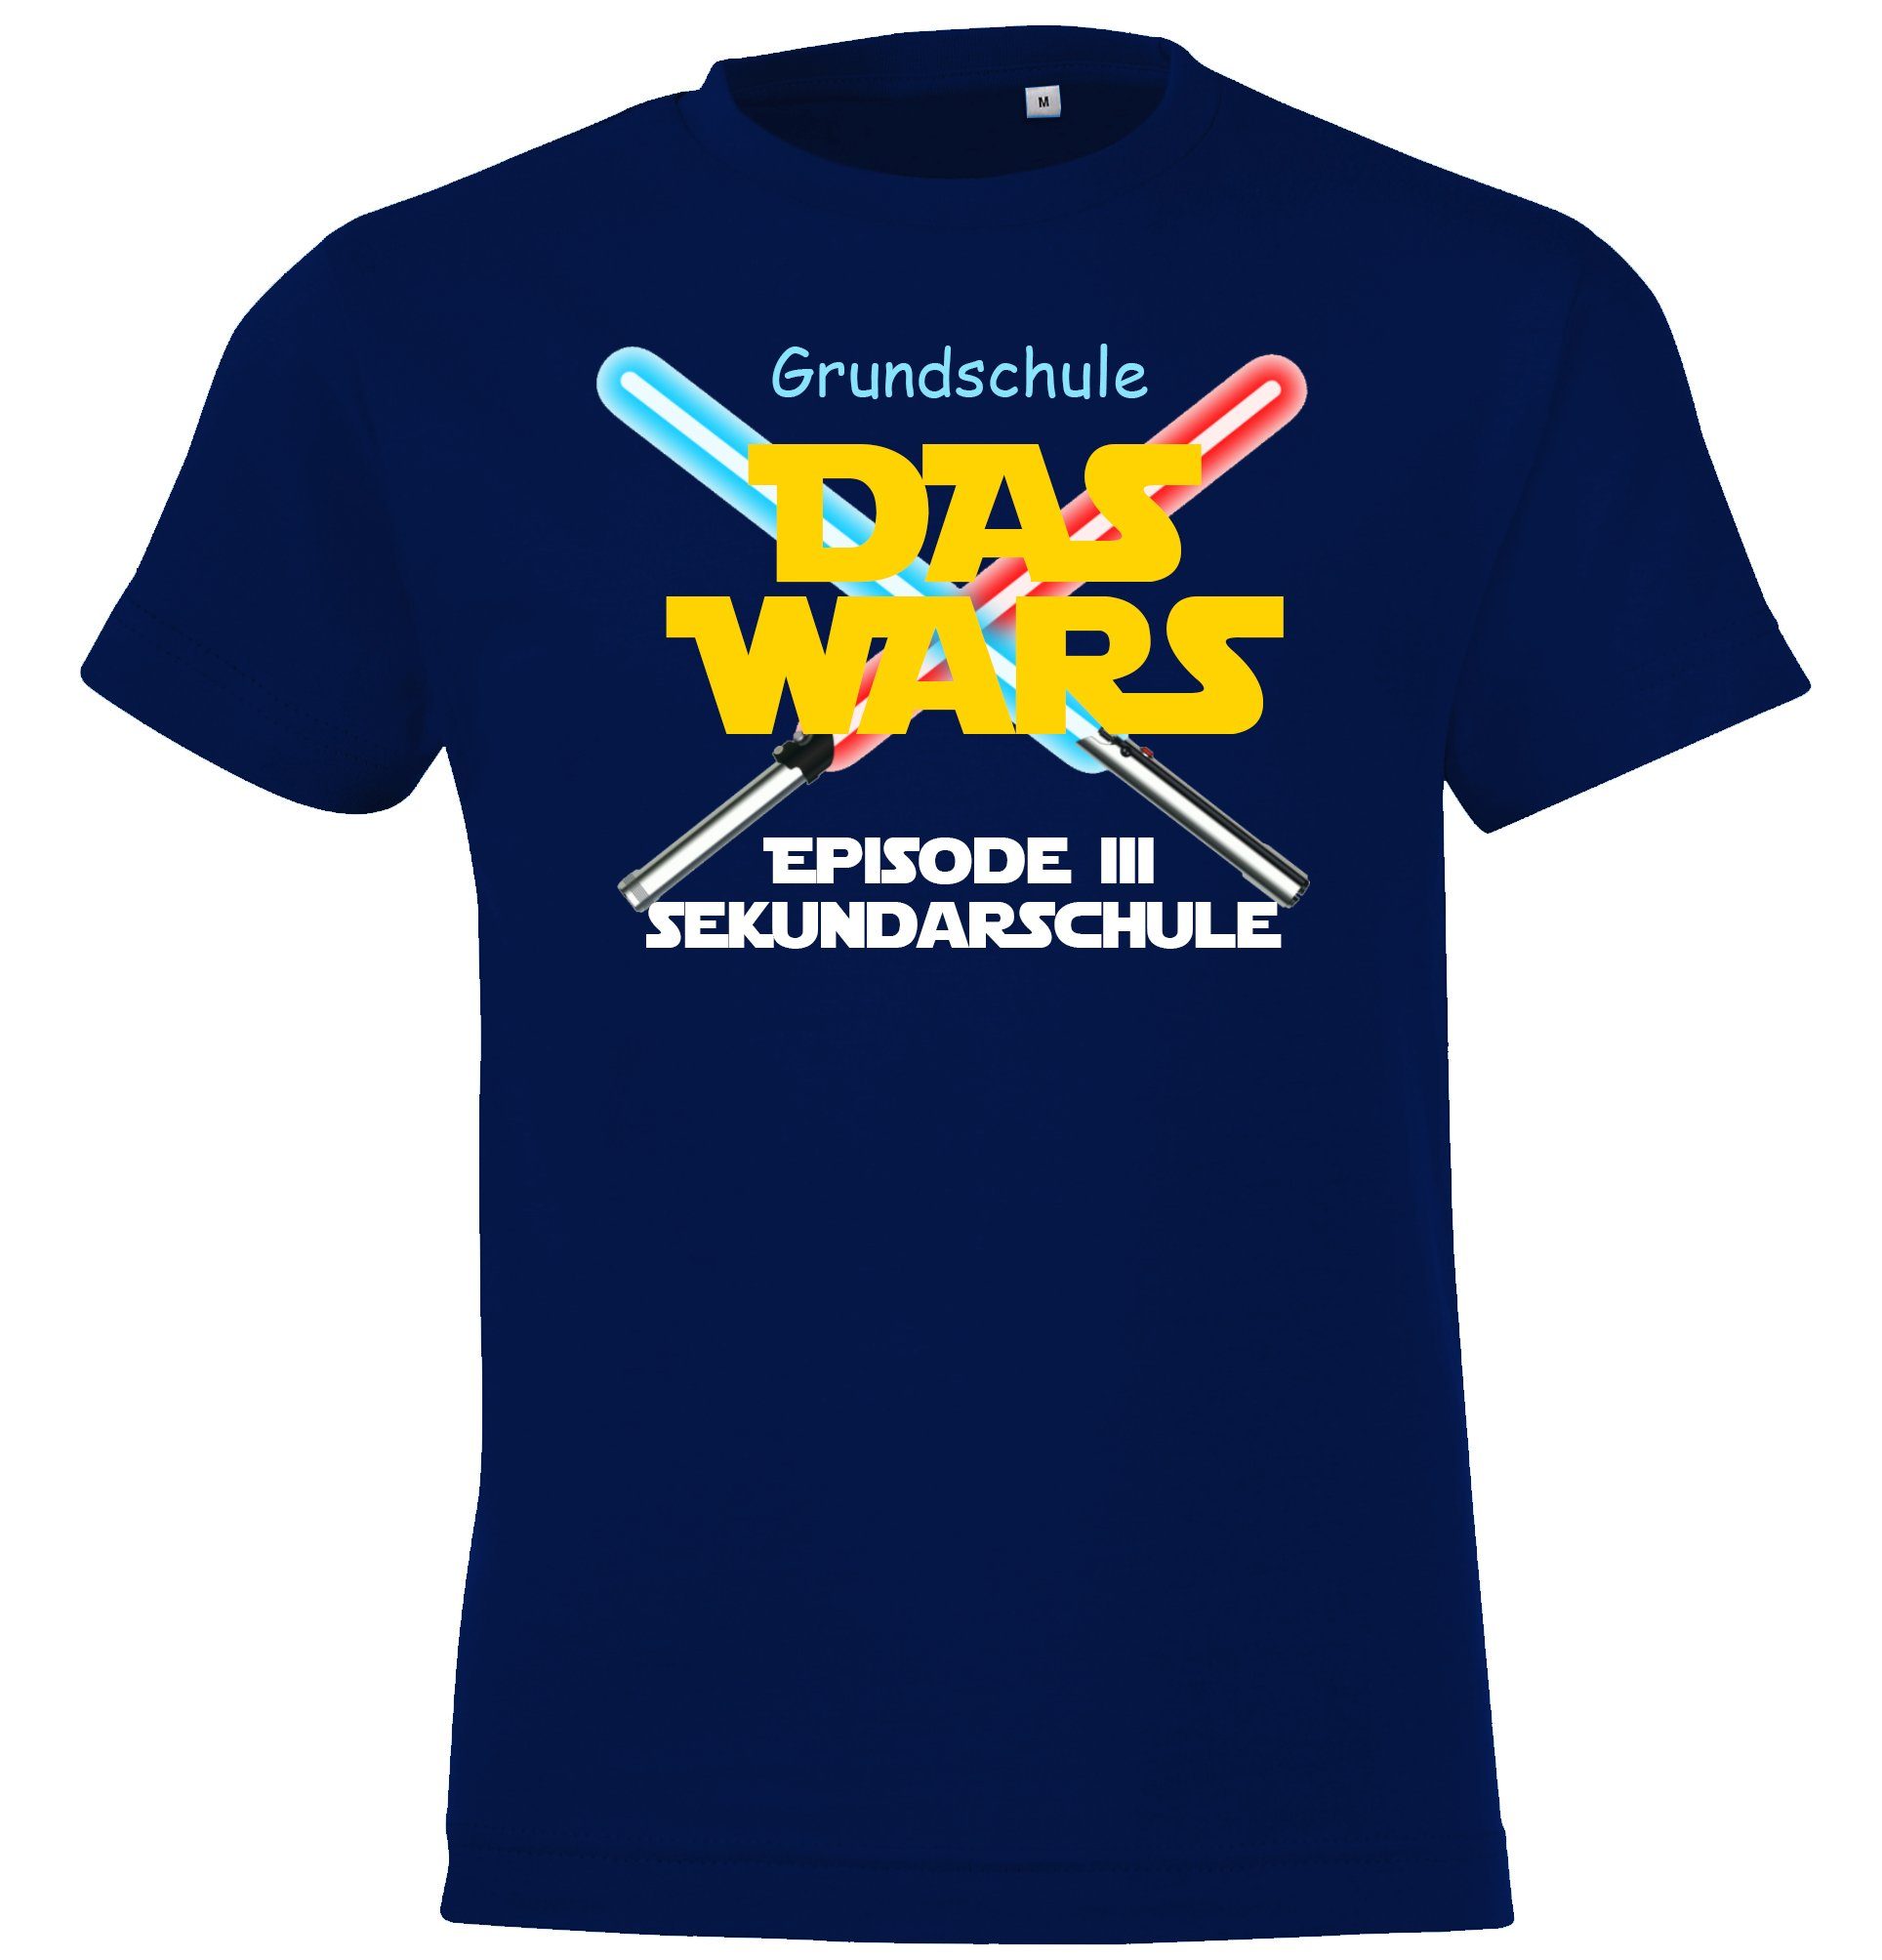 Schulzeit Youth Wars lustigem Navyblau Grundschule Motiv Das T-Shirt mit Designz Kinder der Shirt